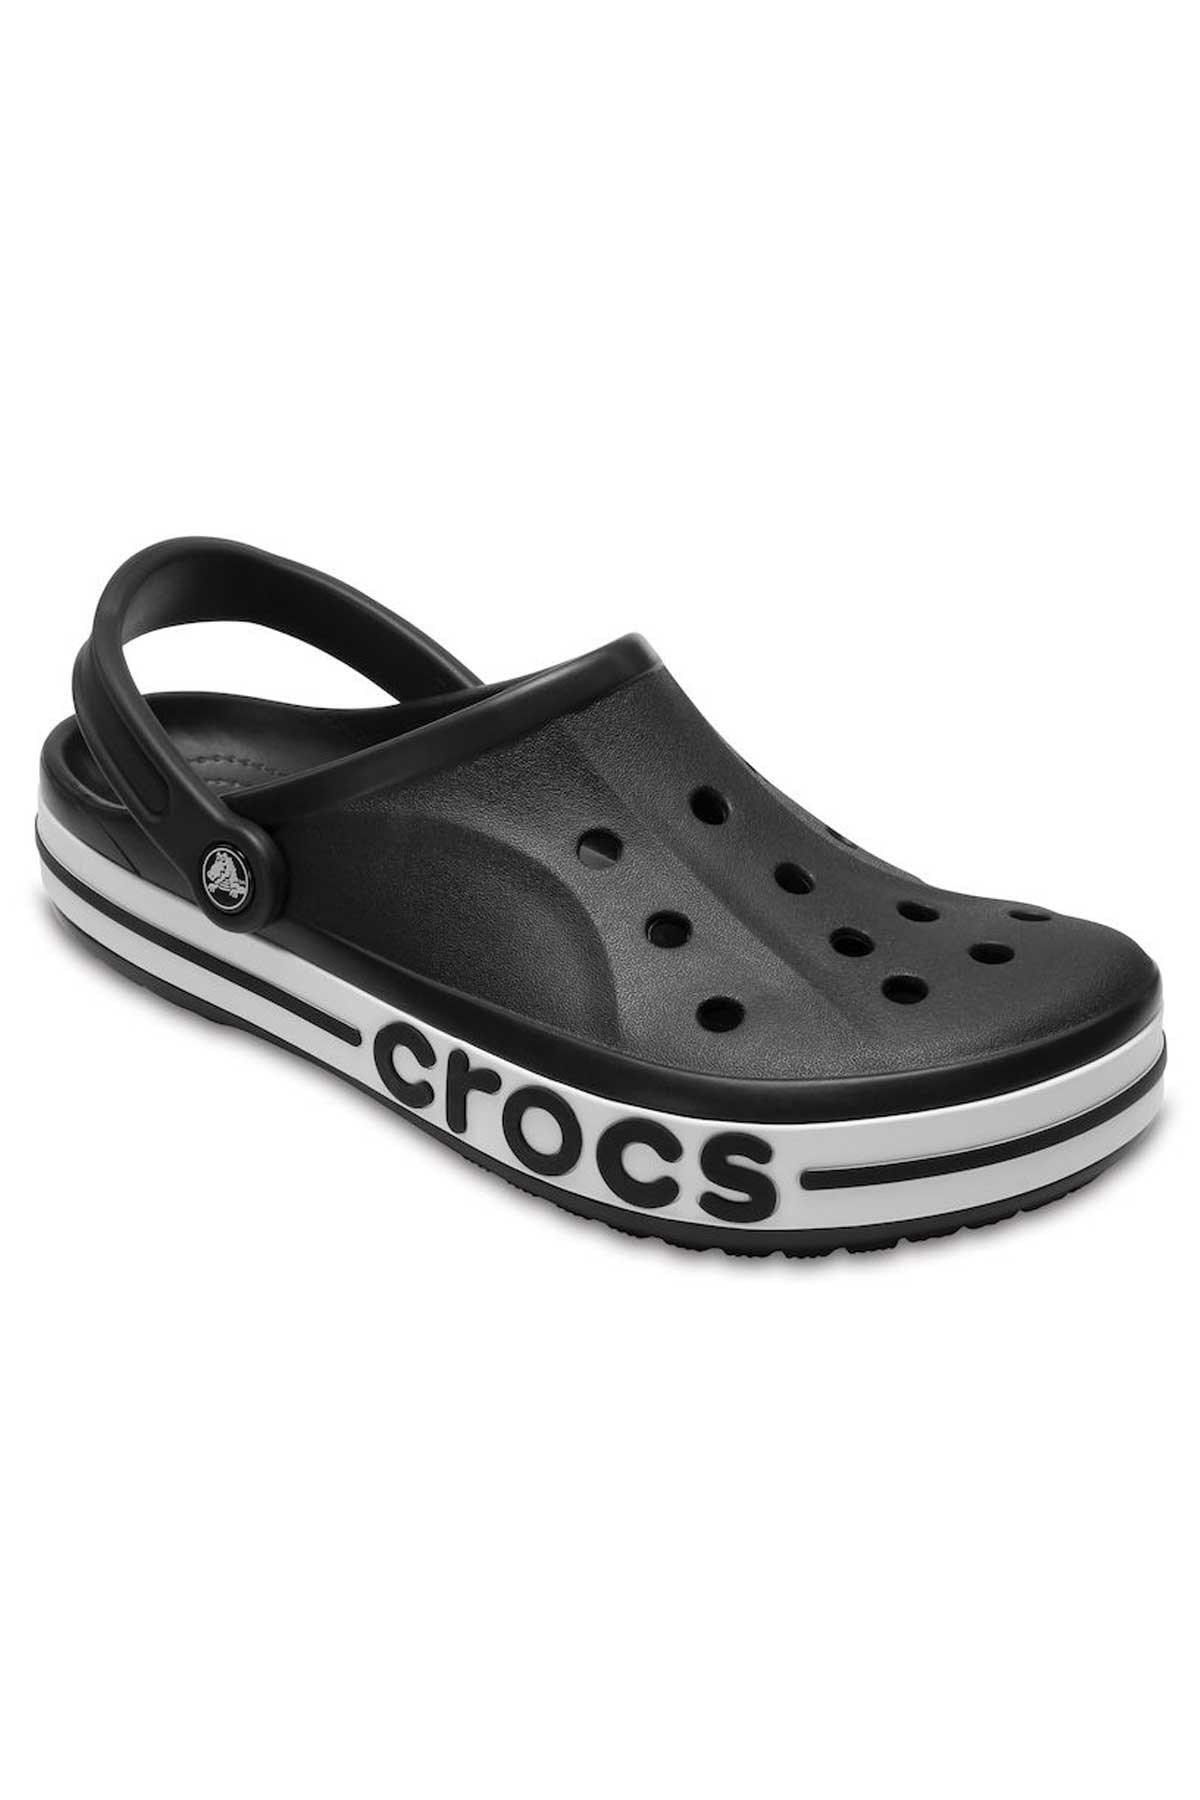 Crocs 205089 Bayaband Clog Siyah Erkek Terlik